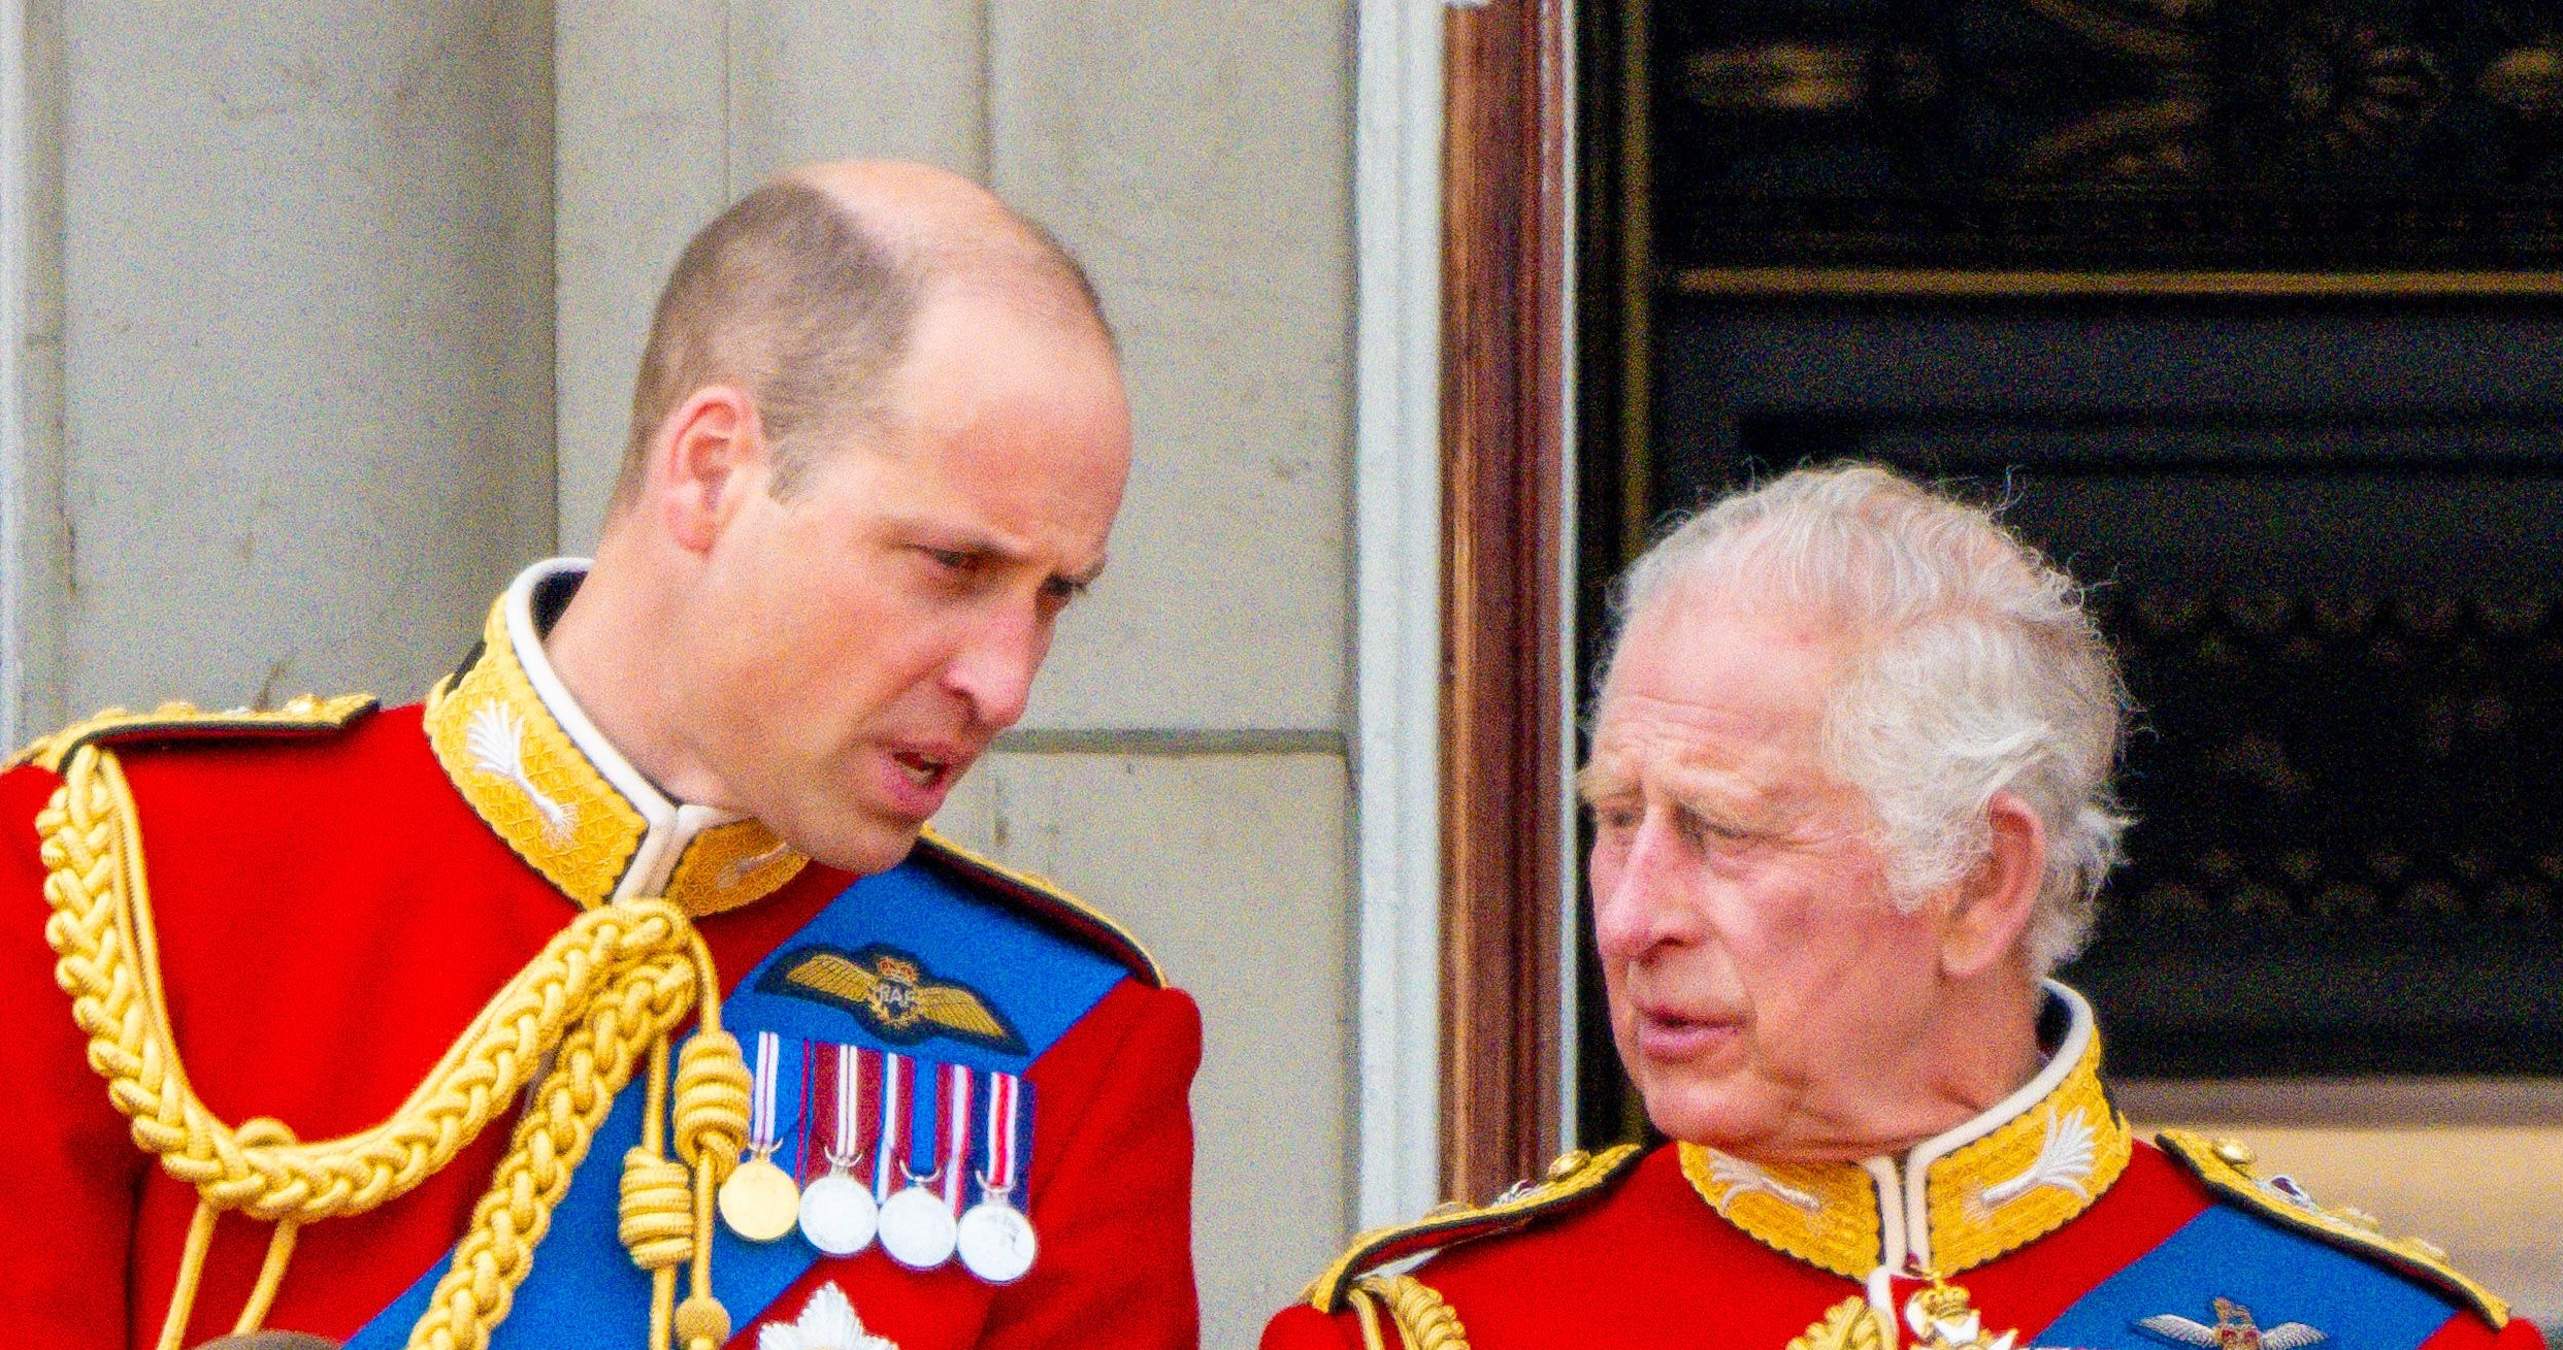 El Regne Unit avergonyit dels seus royals, l'escapada secreta que indigna